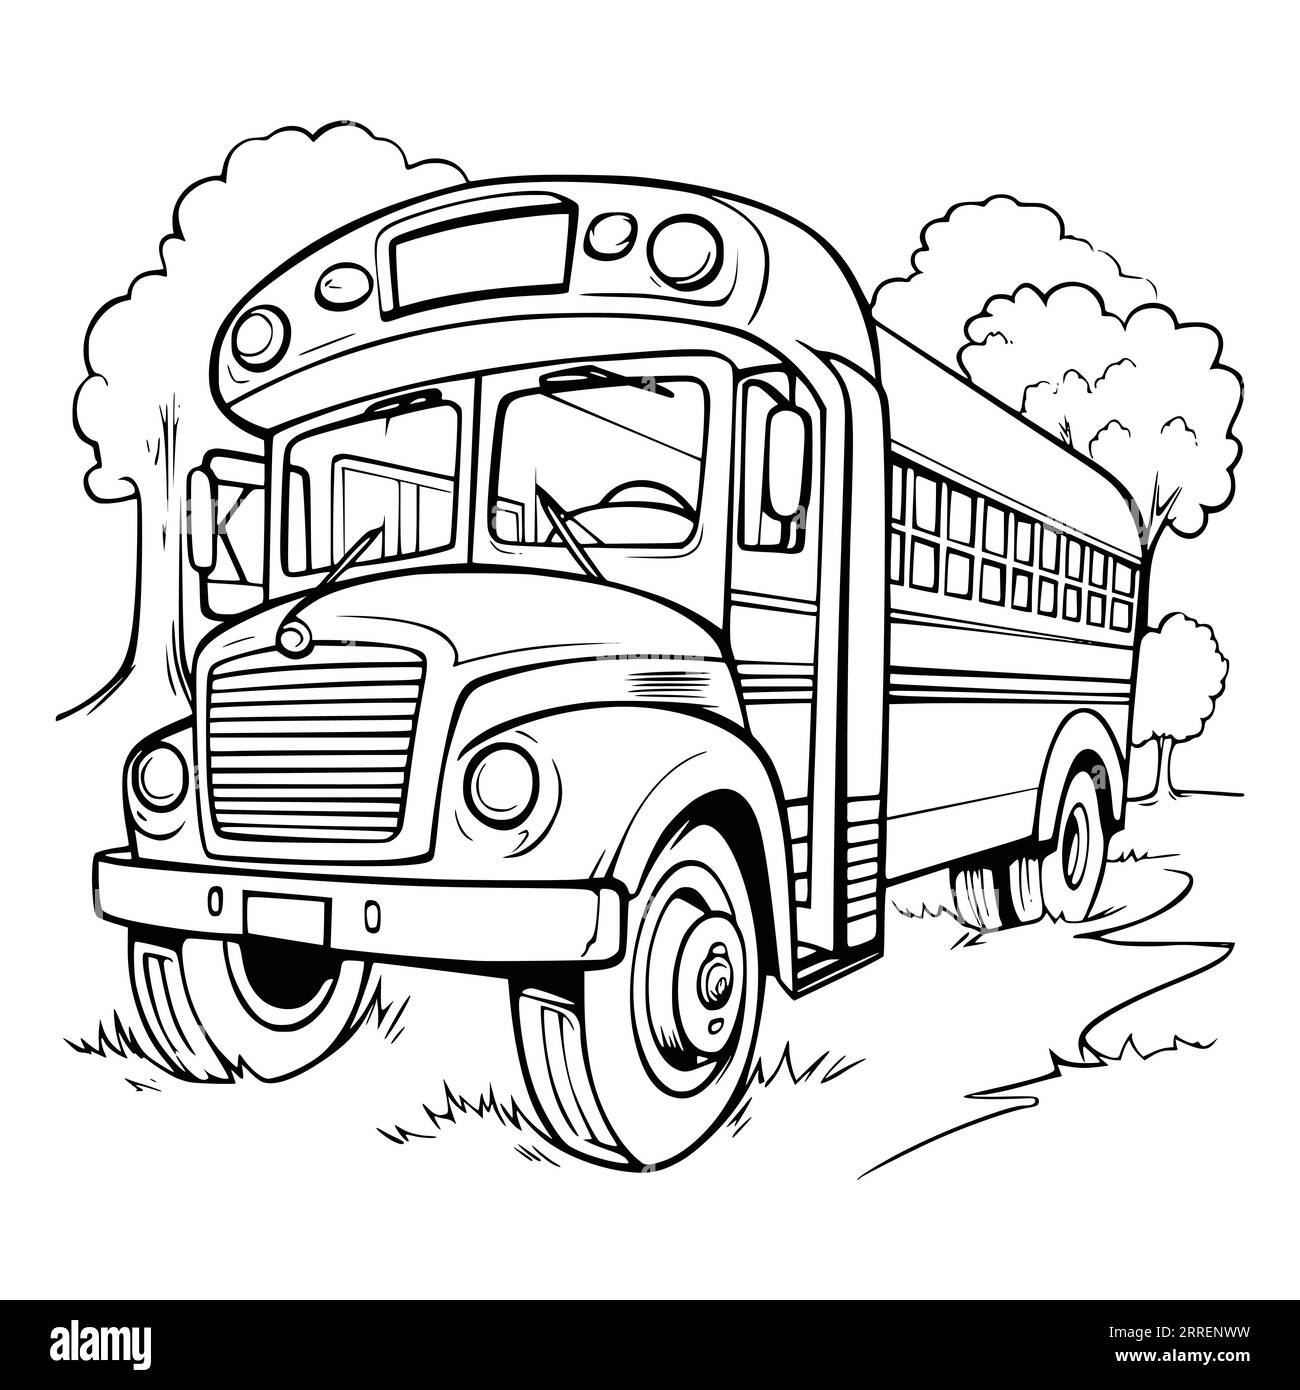 School bus coloring pages pdf hi